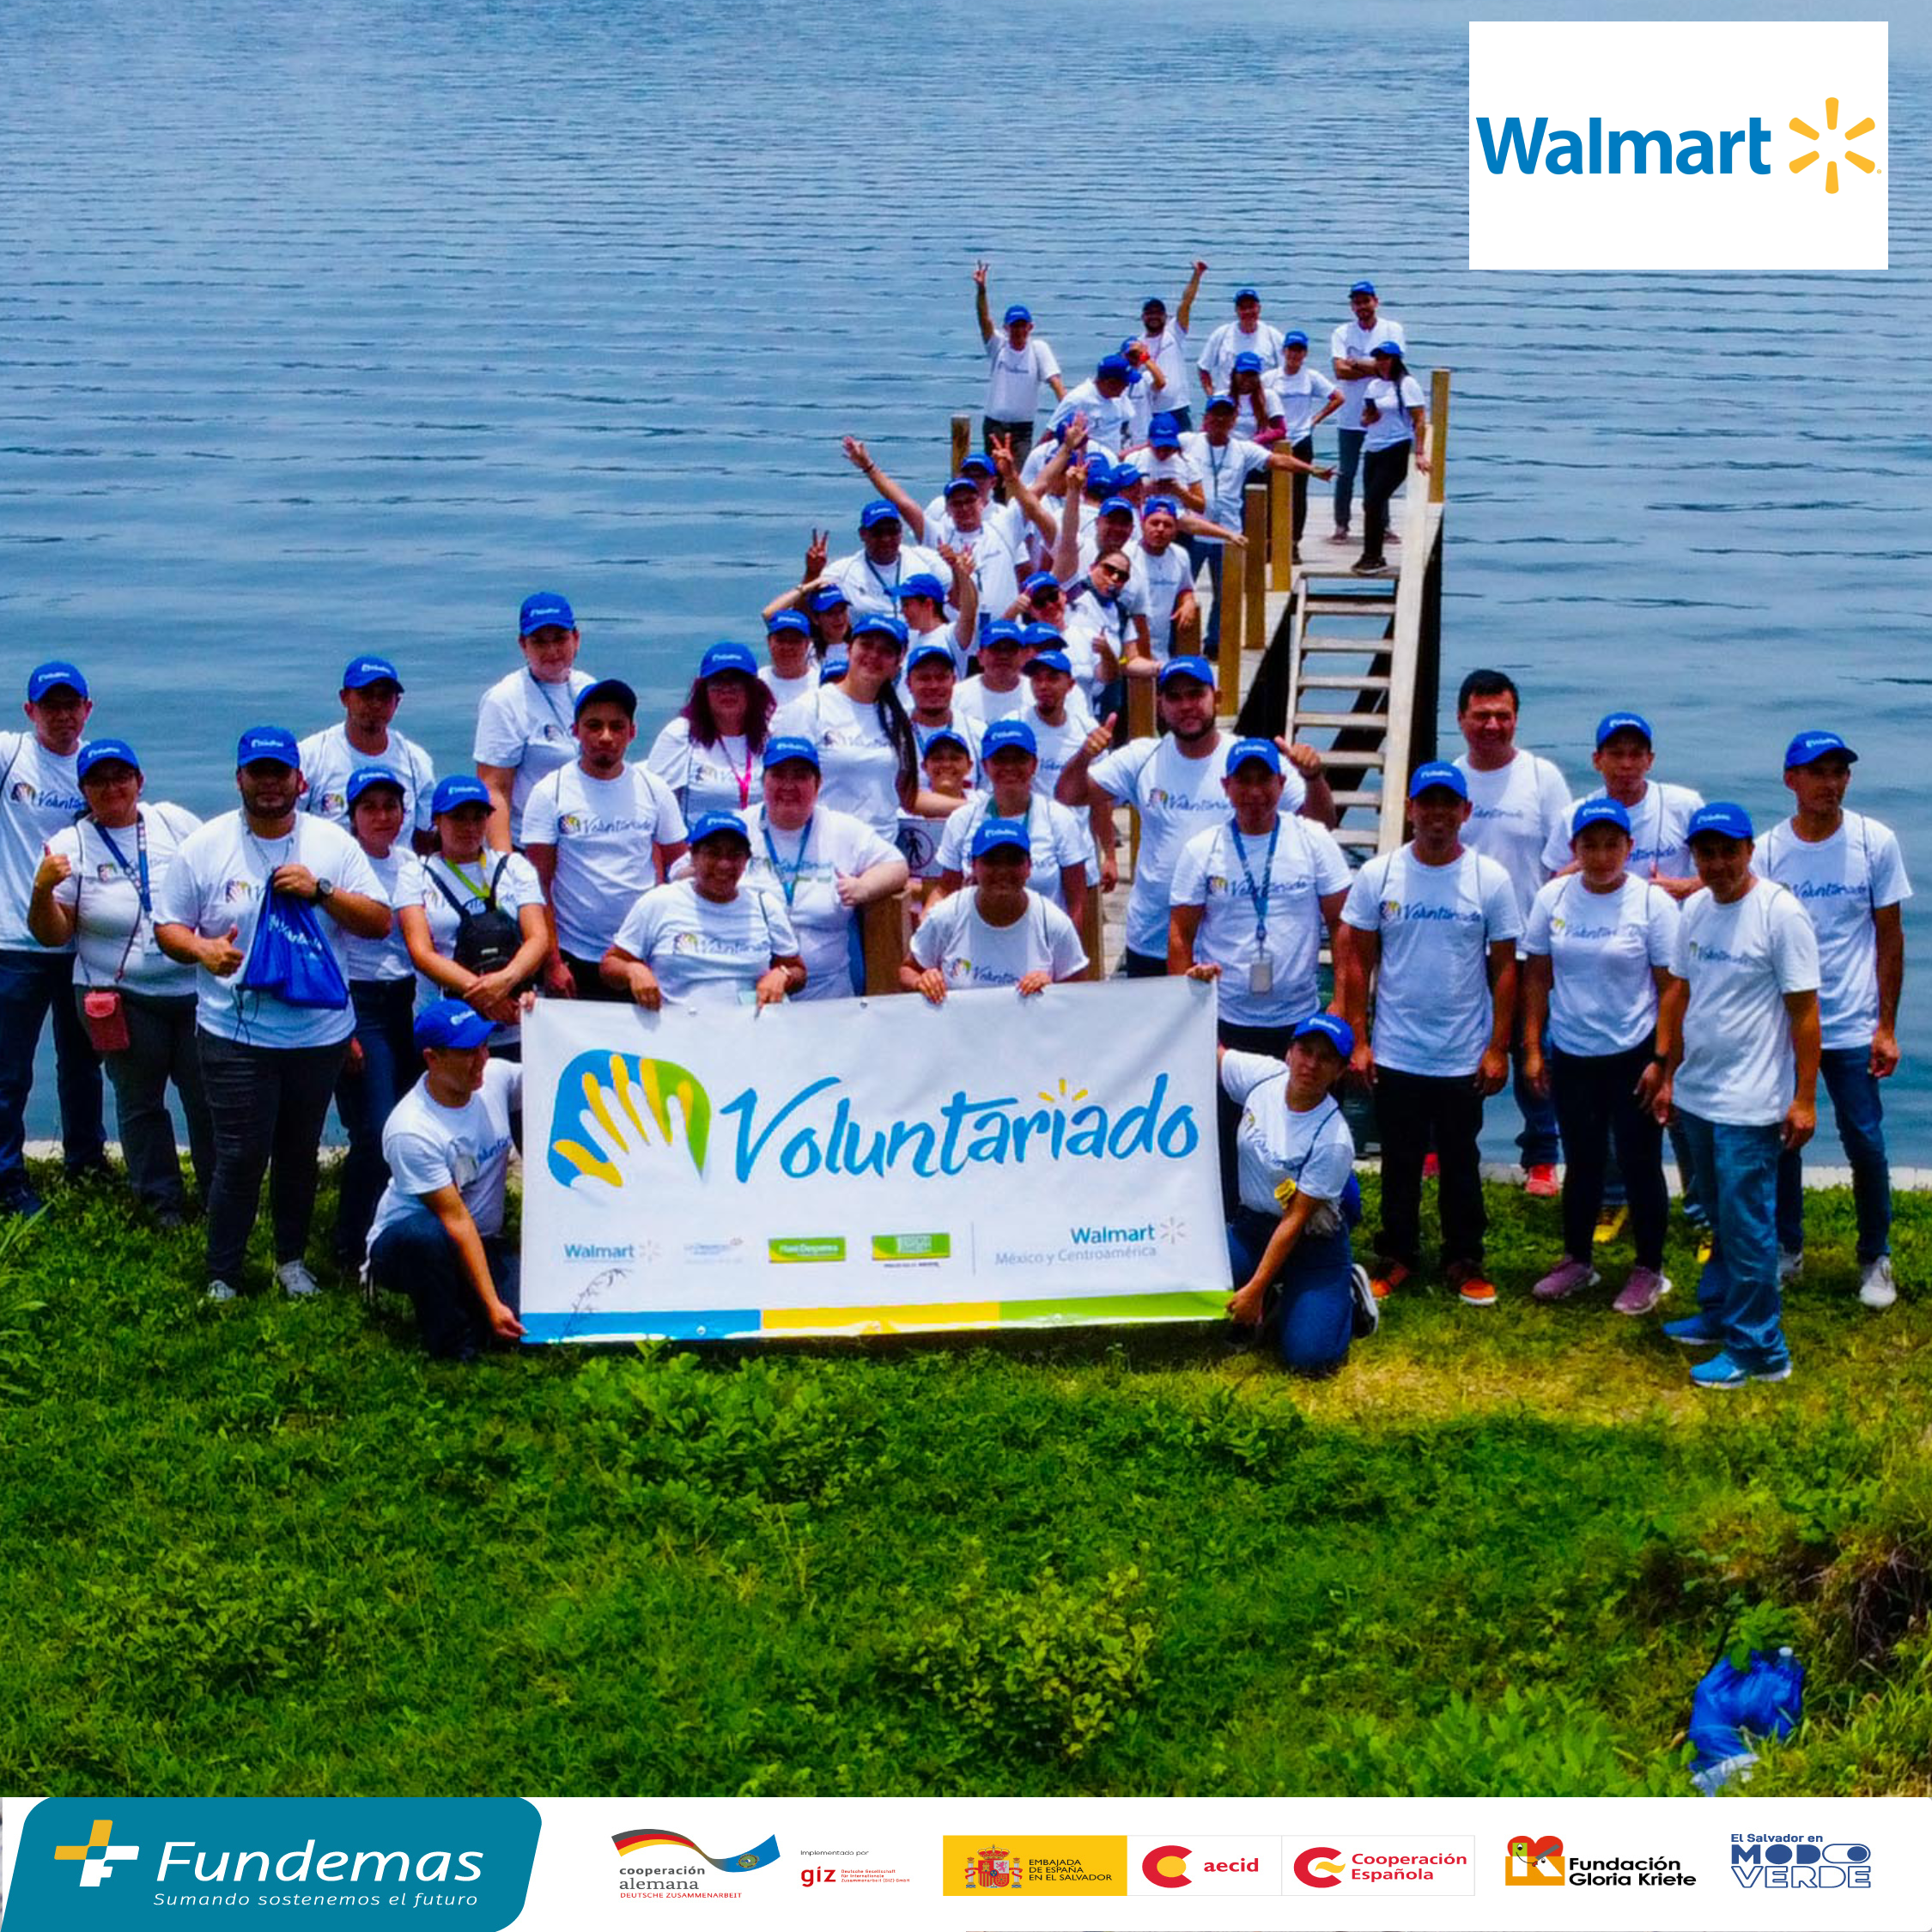 Walmart realizó voluntariado corporativo a beneficio del Lago de Coatepeque